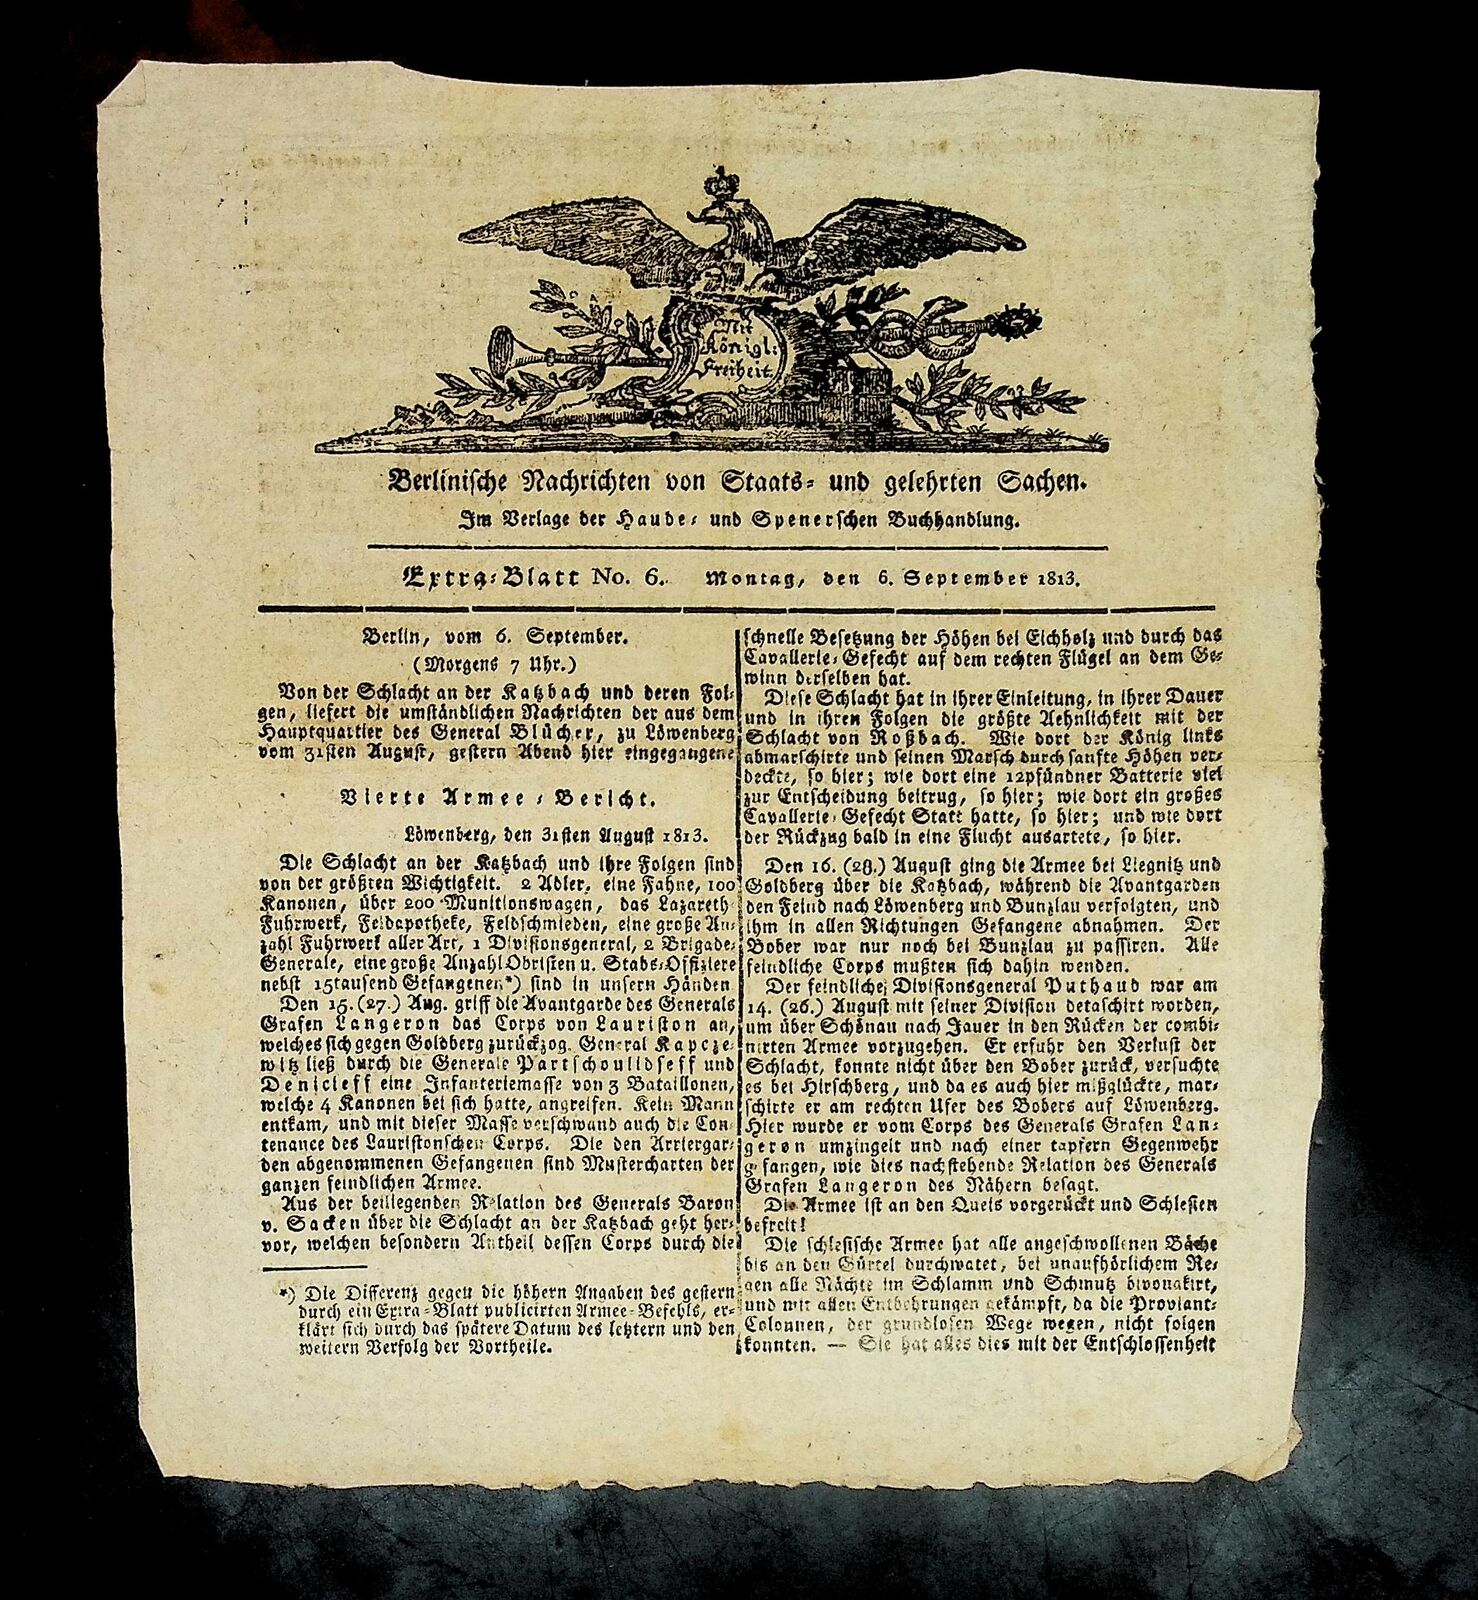 1813 Germany  BERLIN Berlinische Nachrichten von Staats Newspaper